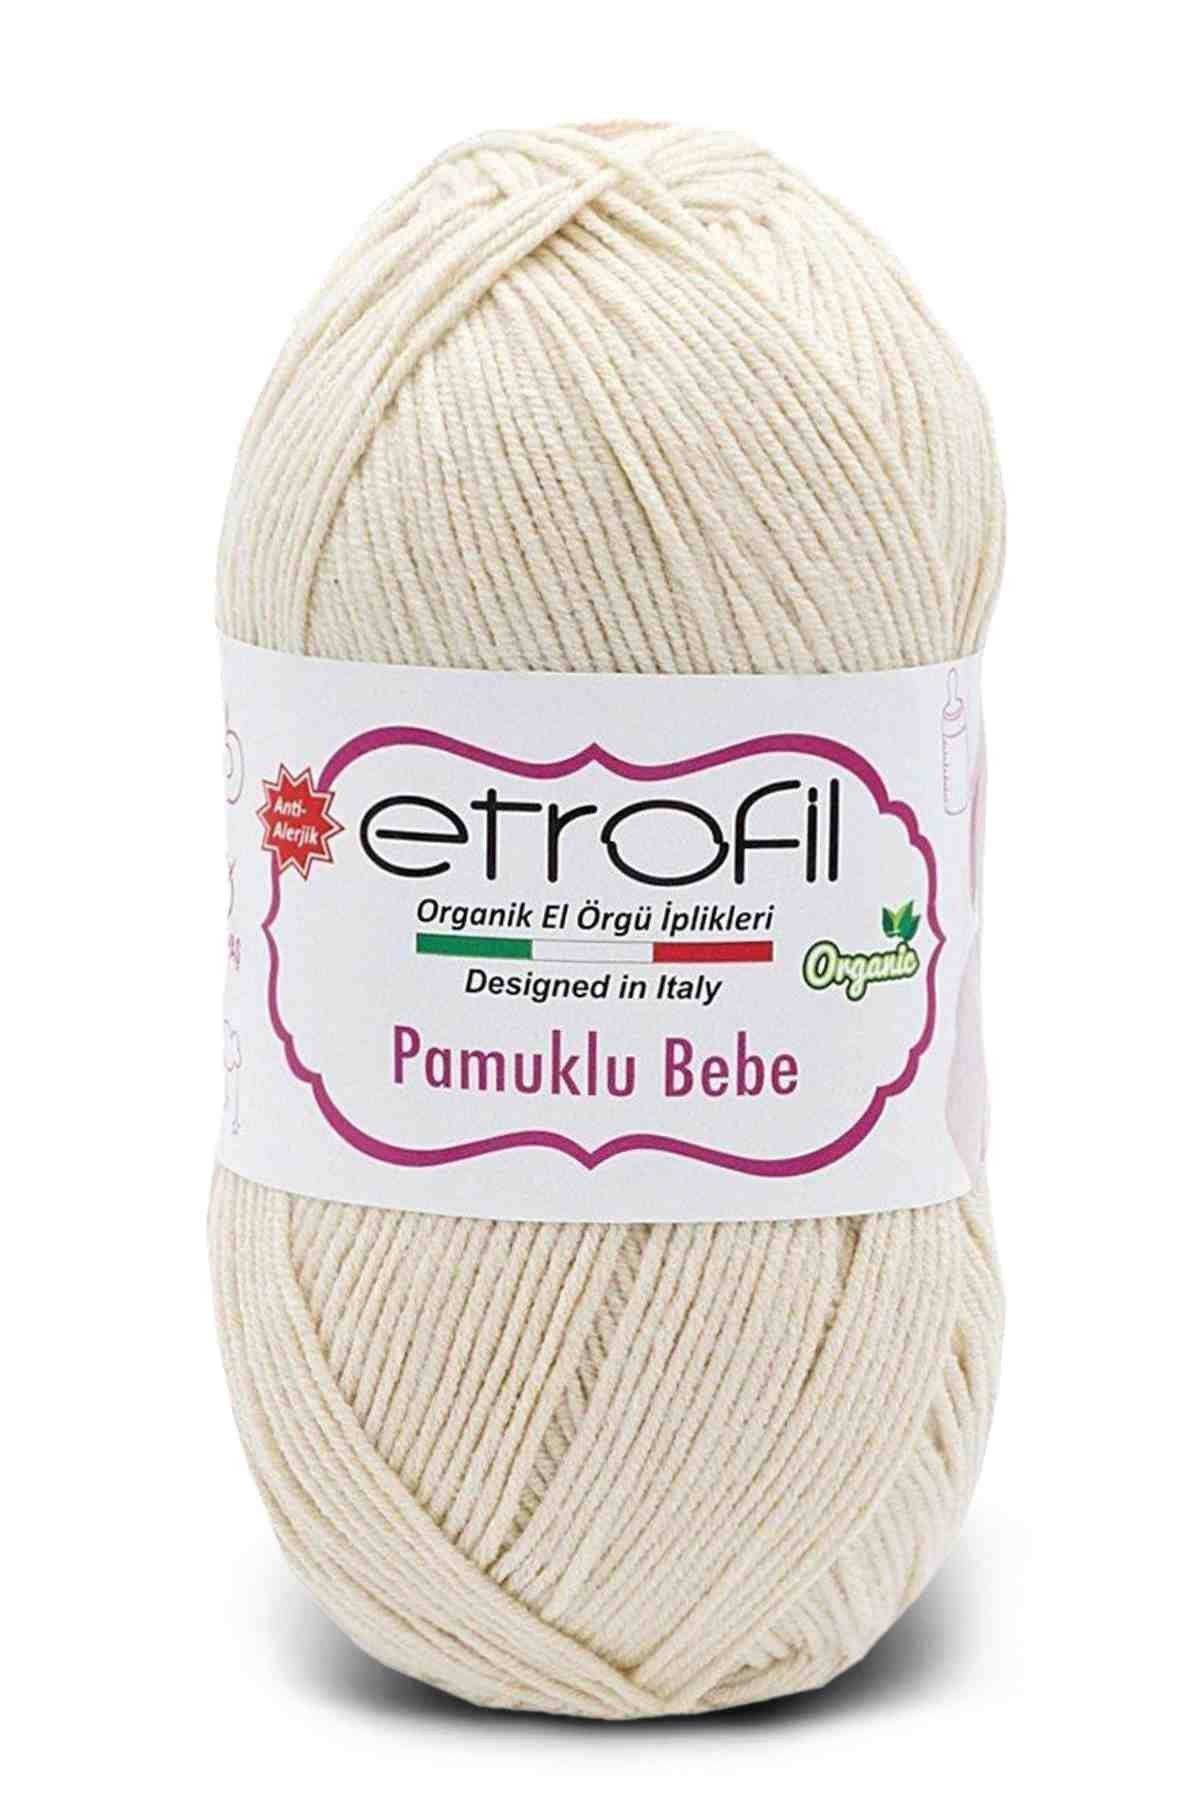 Etrofil Pamuklu Bebe Cotton Yarn